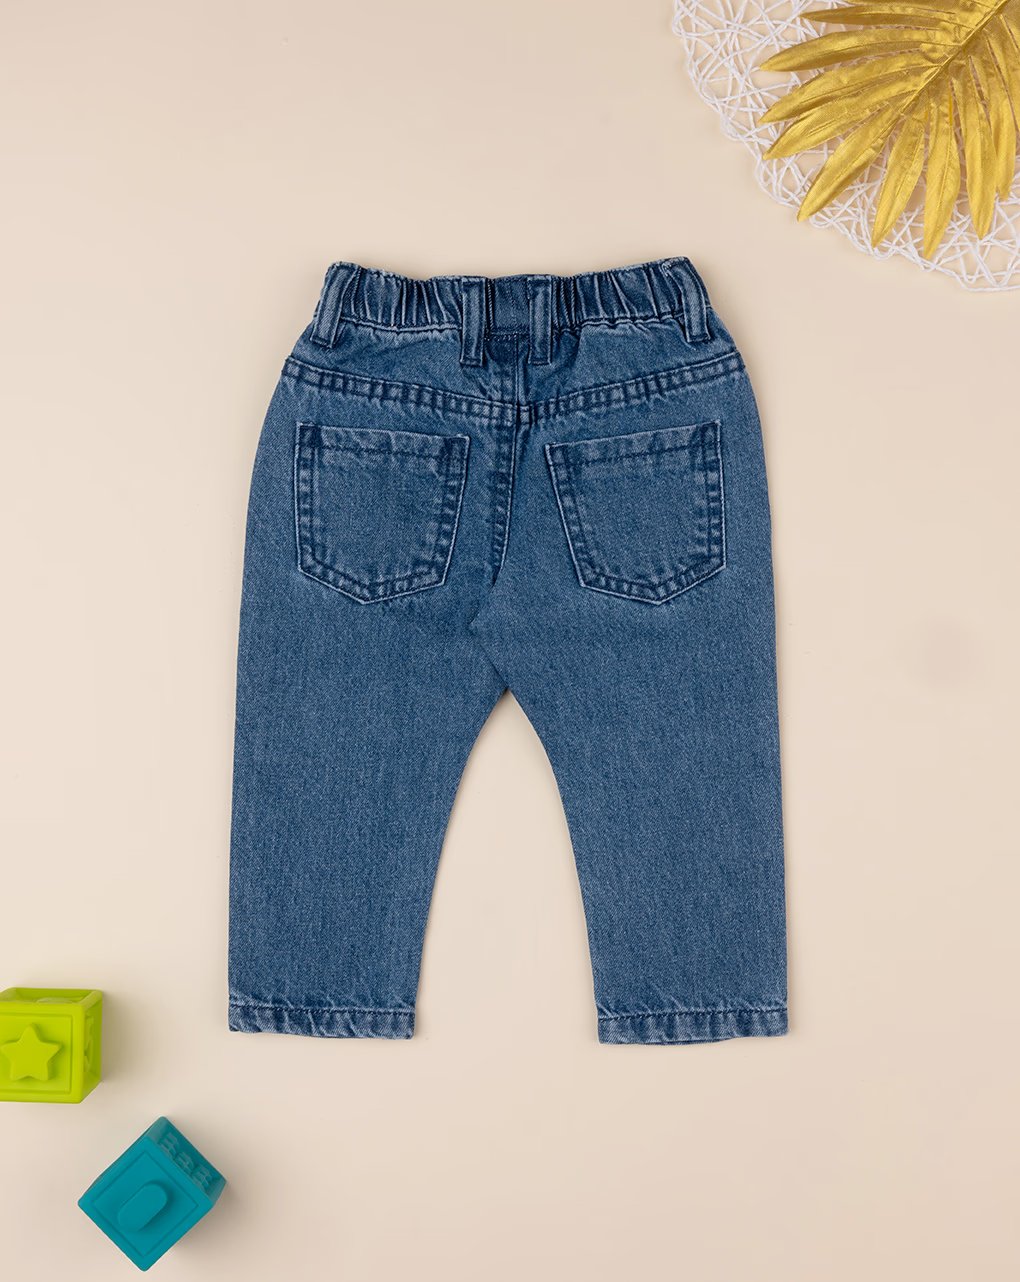 βρεφικό τζιν παντελόνι μπλε για αγόρι - Prénatal